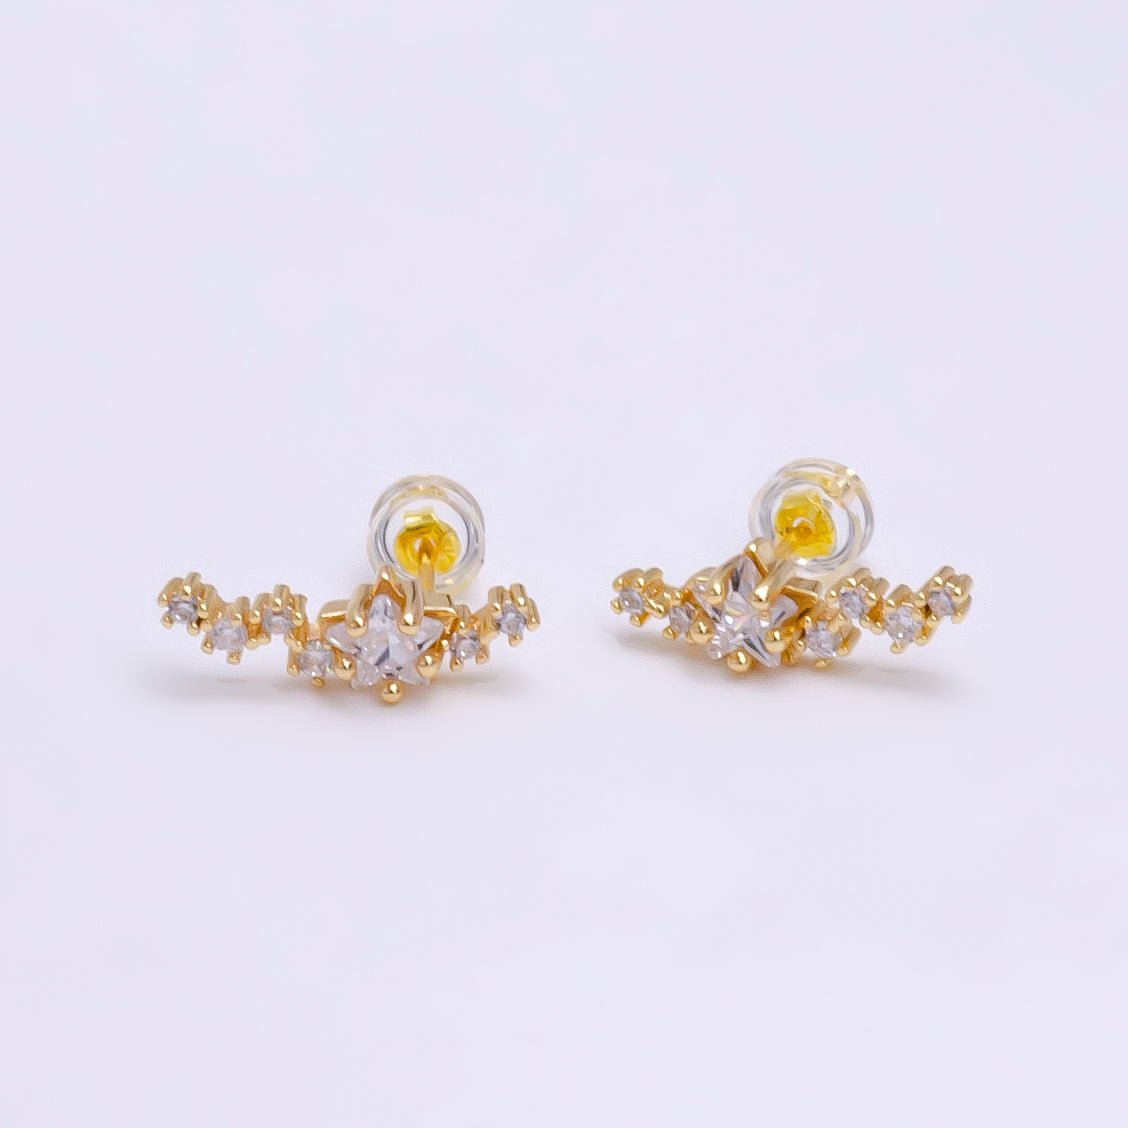 Climber Star Stud Earrings, Crystal Encrusted, Wedding Earrings, Celestial Stud Earrings, bridesmaids earring, Bridal Earrings V-080 V-081 - DLUXCA